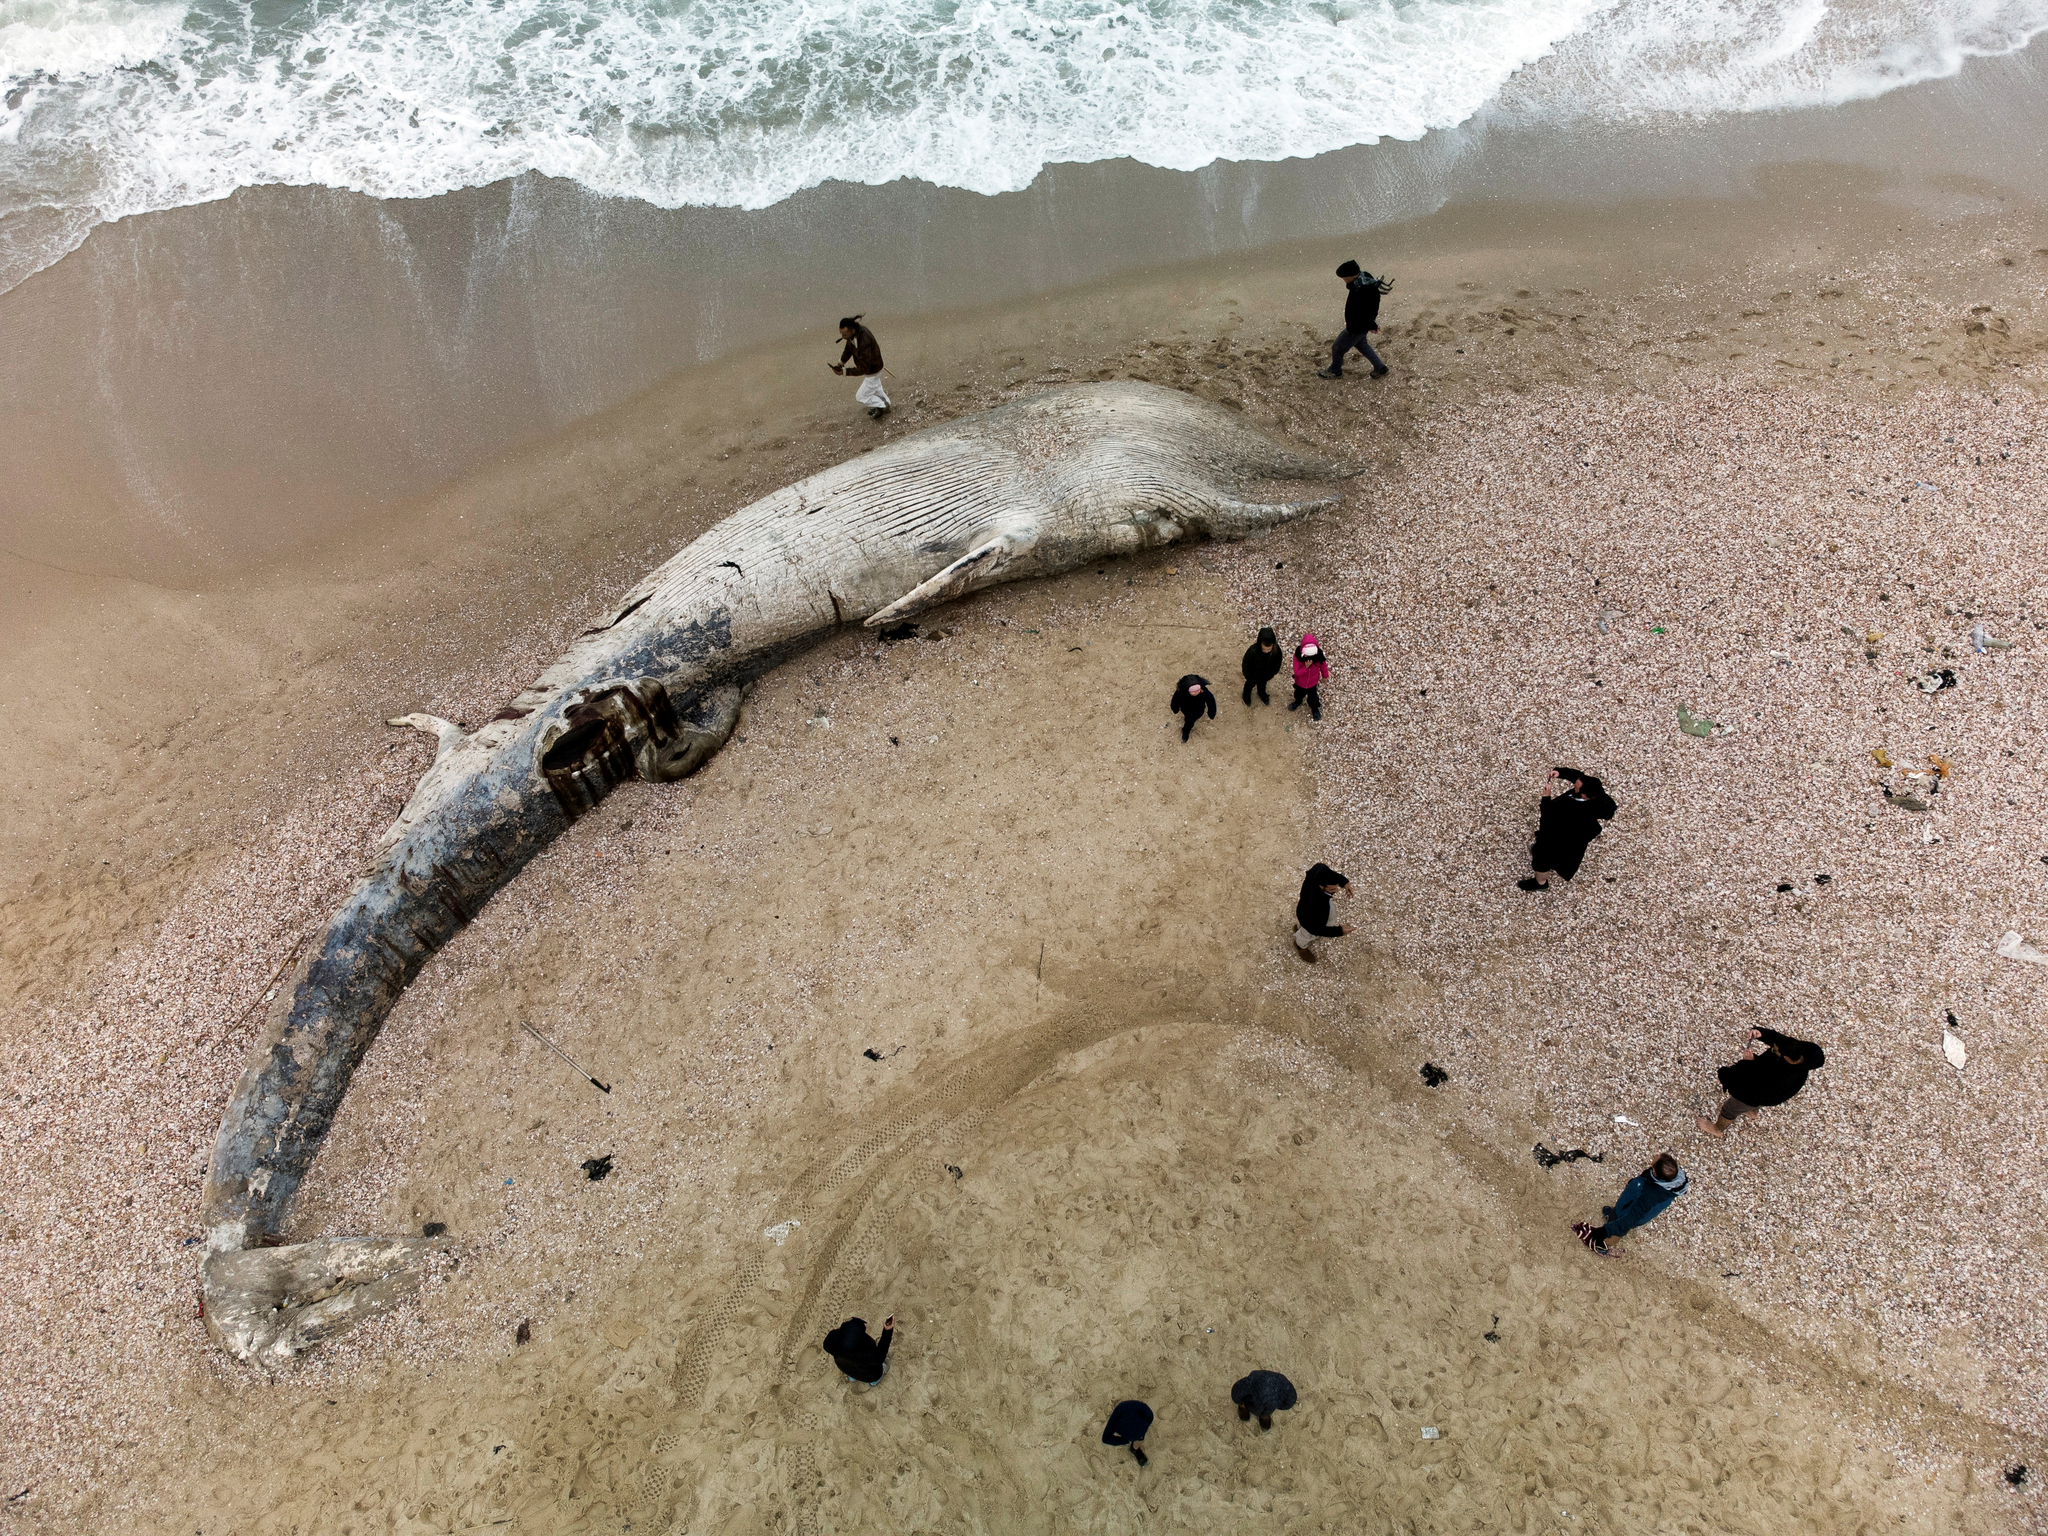 이스라엘에서 발견 된 17m 길이의 수염 고래 시체, 인근 바다는 ‘타르 오염’